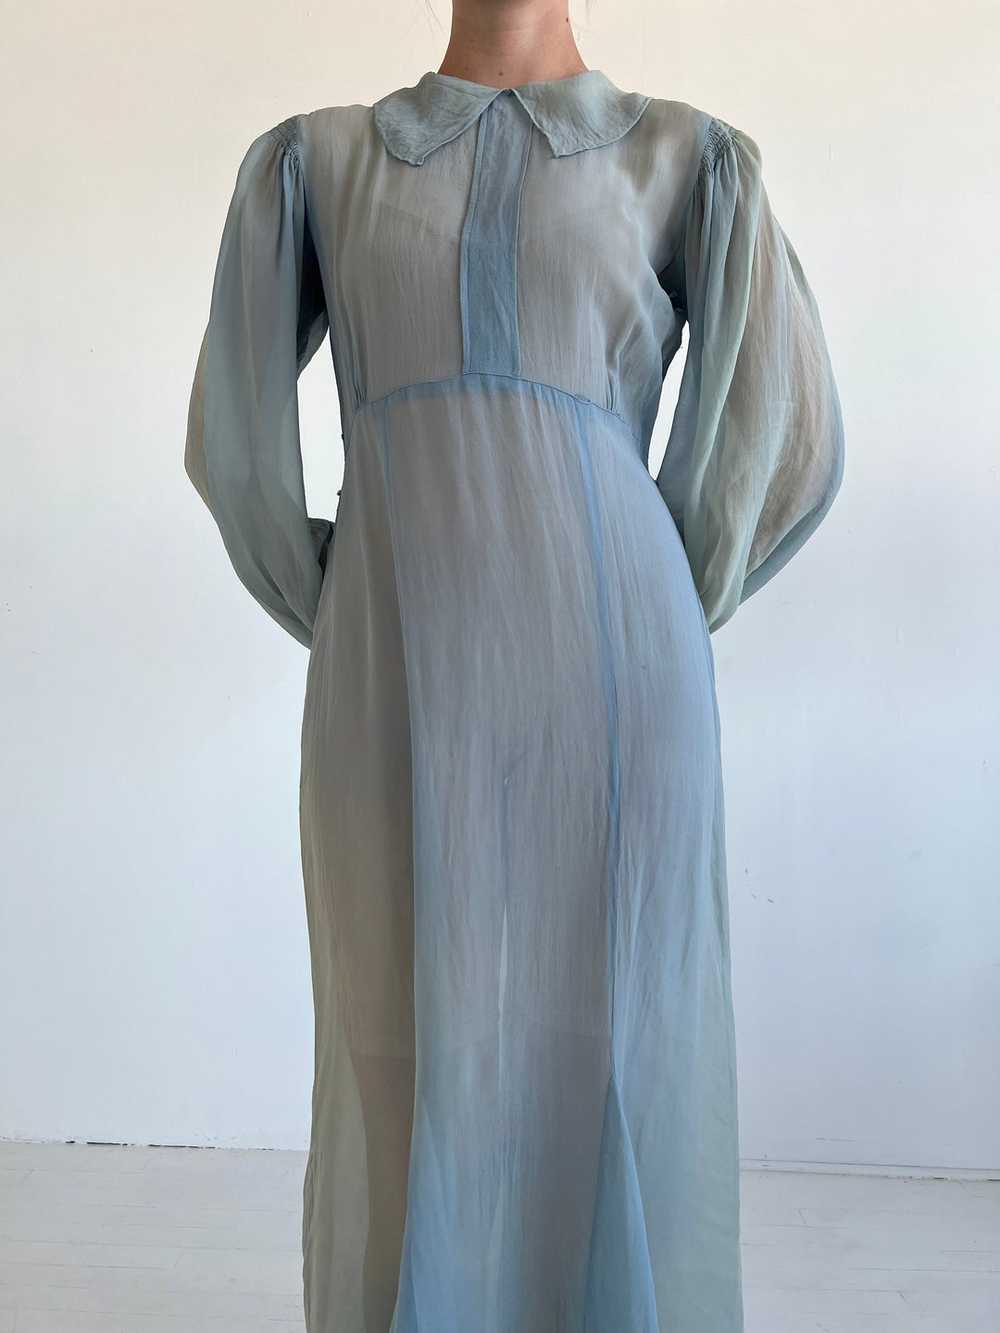 1930's Blue Silk Chiffon Dress - image 1